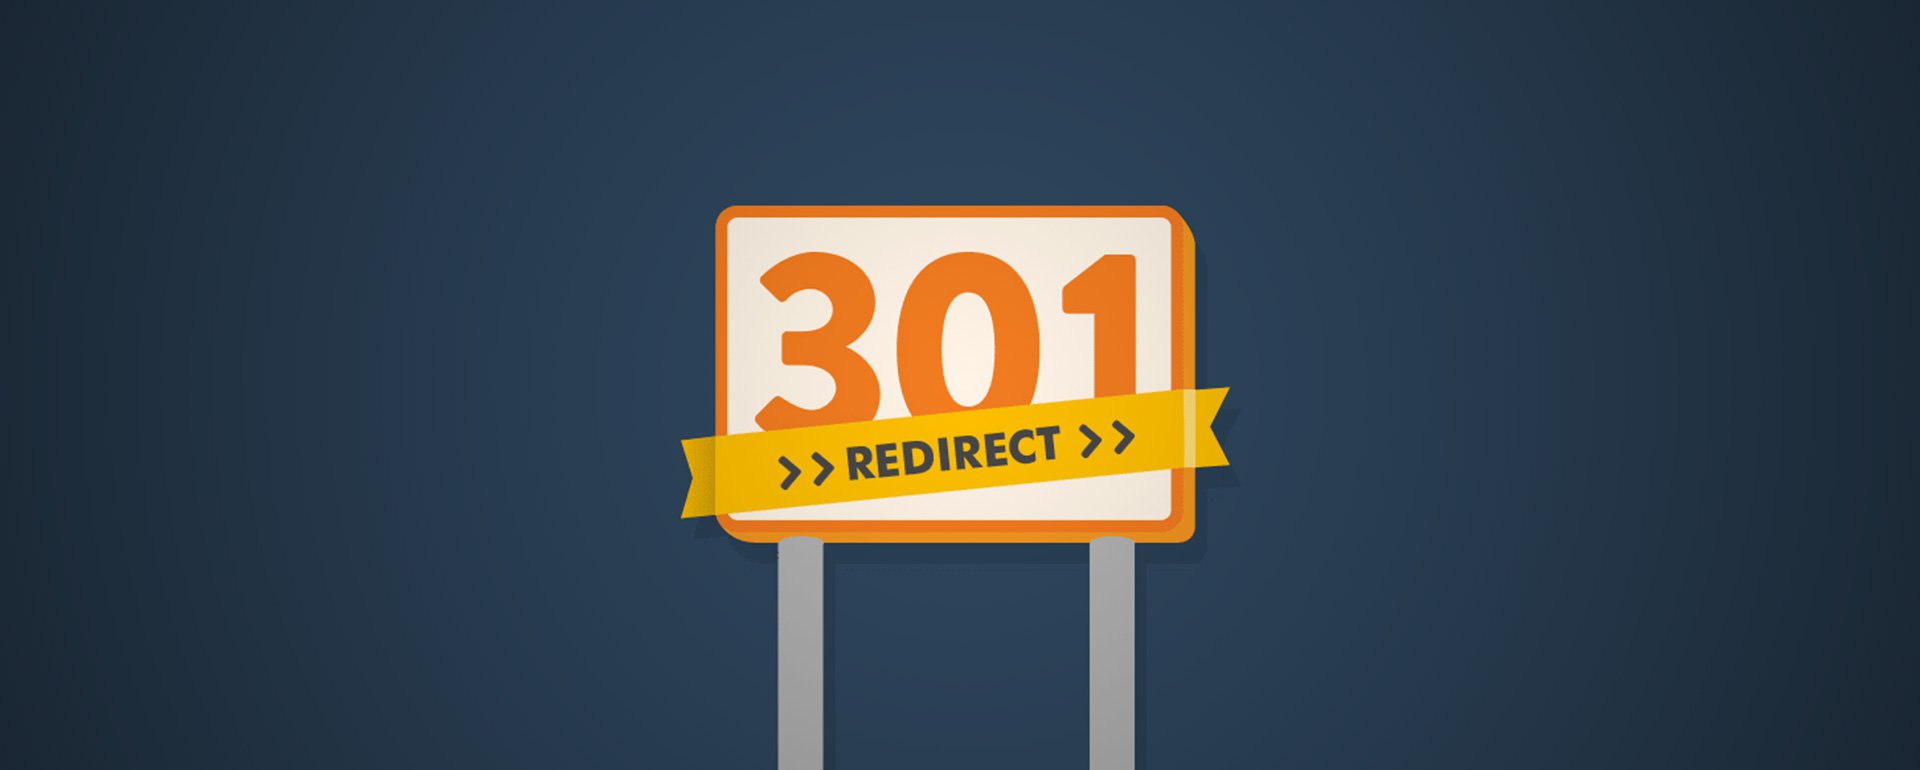 301-й редирект полностью заменил директиву Host